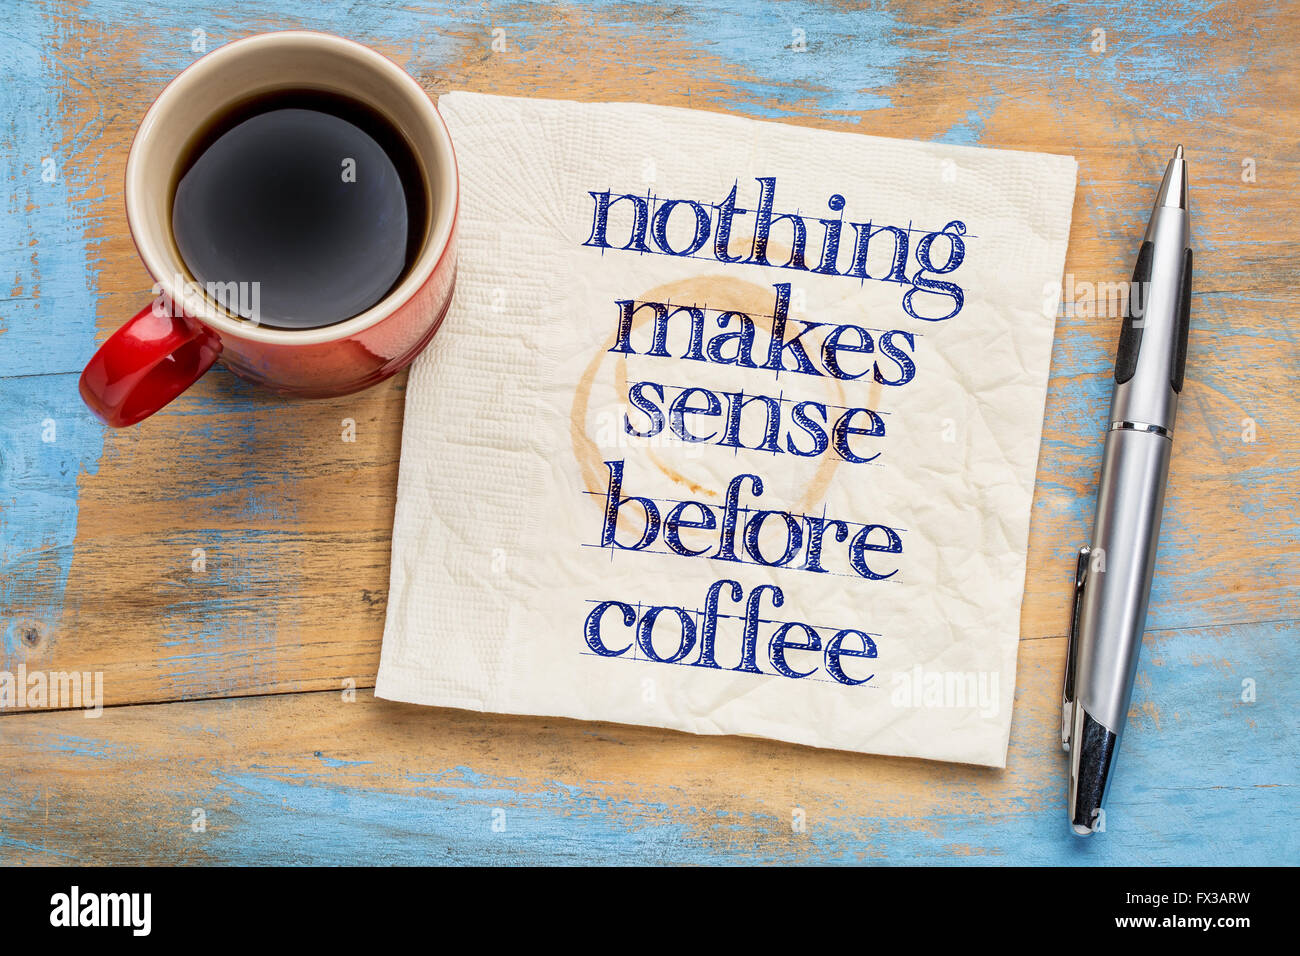 Nichts ist sinnvoll vor Kaffee - Handschrift auf einer Serviette mit Tasse Kaffee vor Grunge Holz Hintergrund Stockfoto